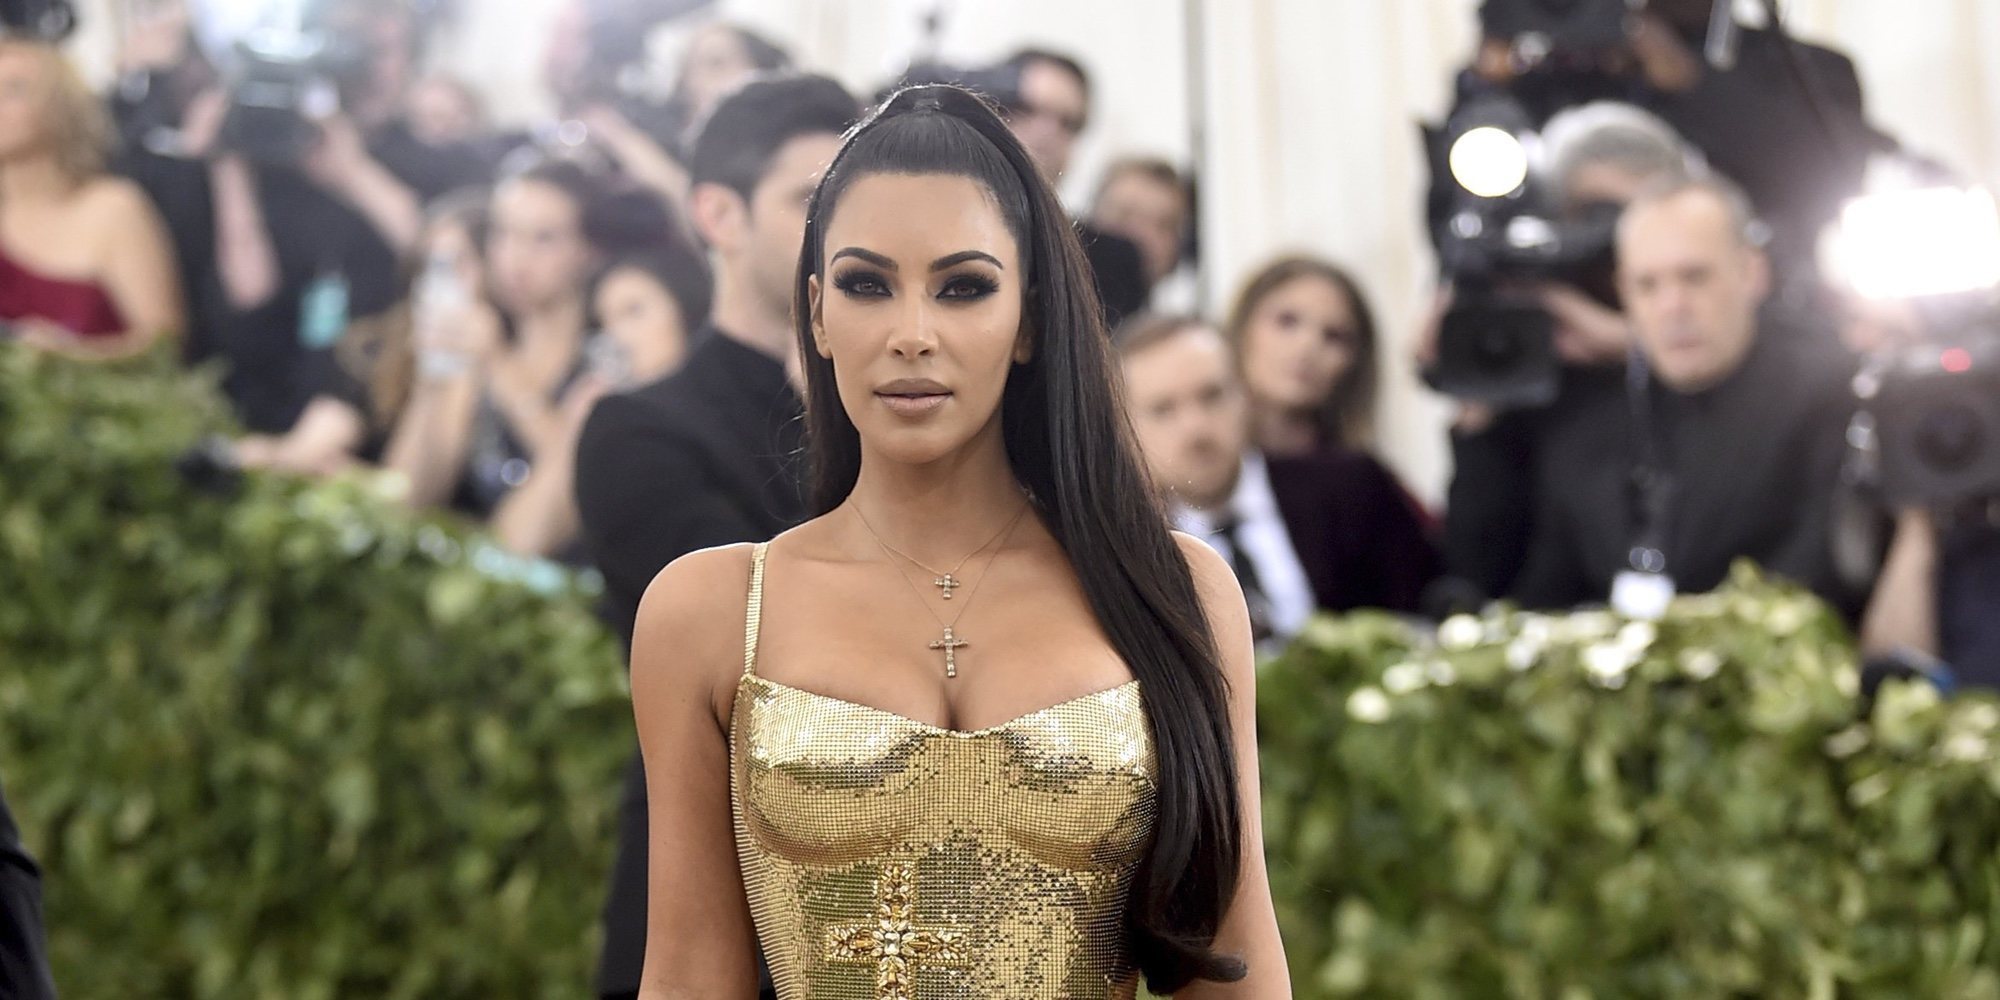 El polémico premio de la CFDA 2018 a Kim Kardashian: "Lleva ropa muy informal que no es memorable"